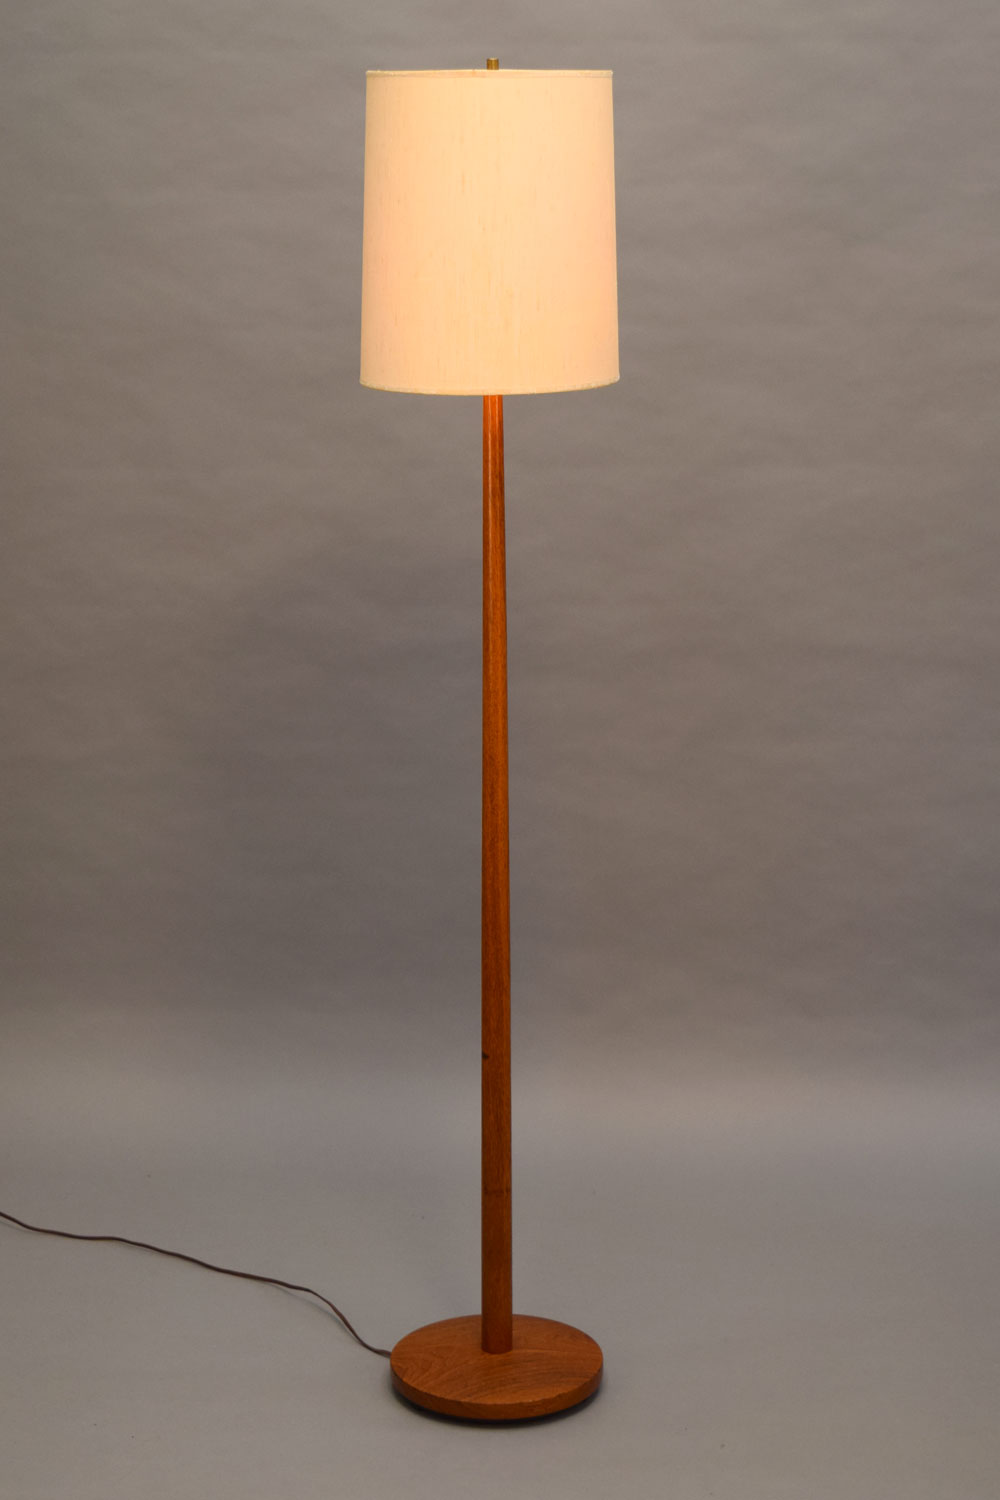 lampSM2.jpg